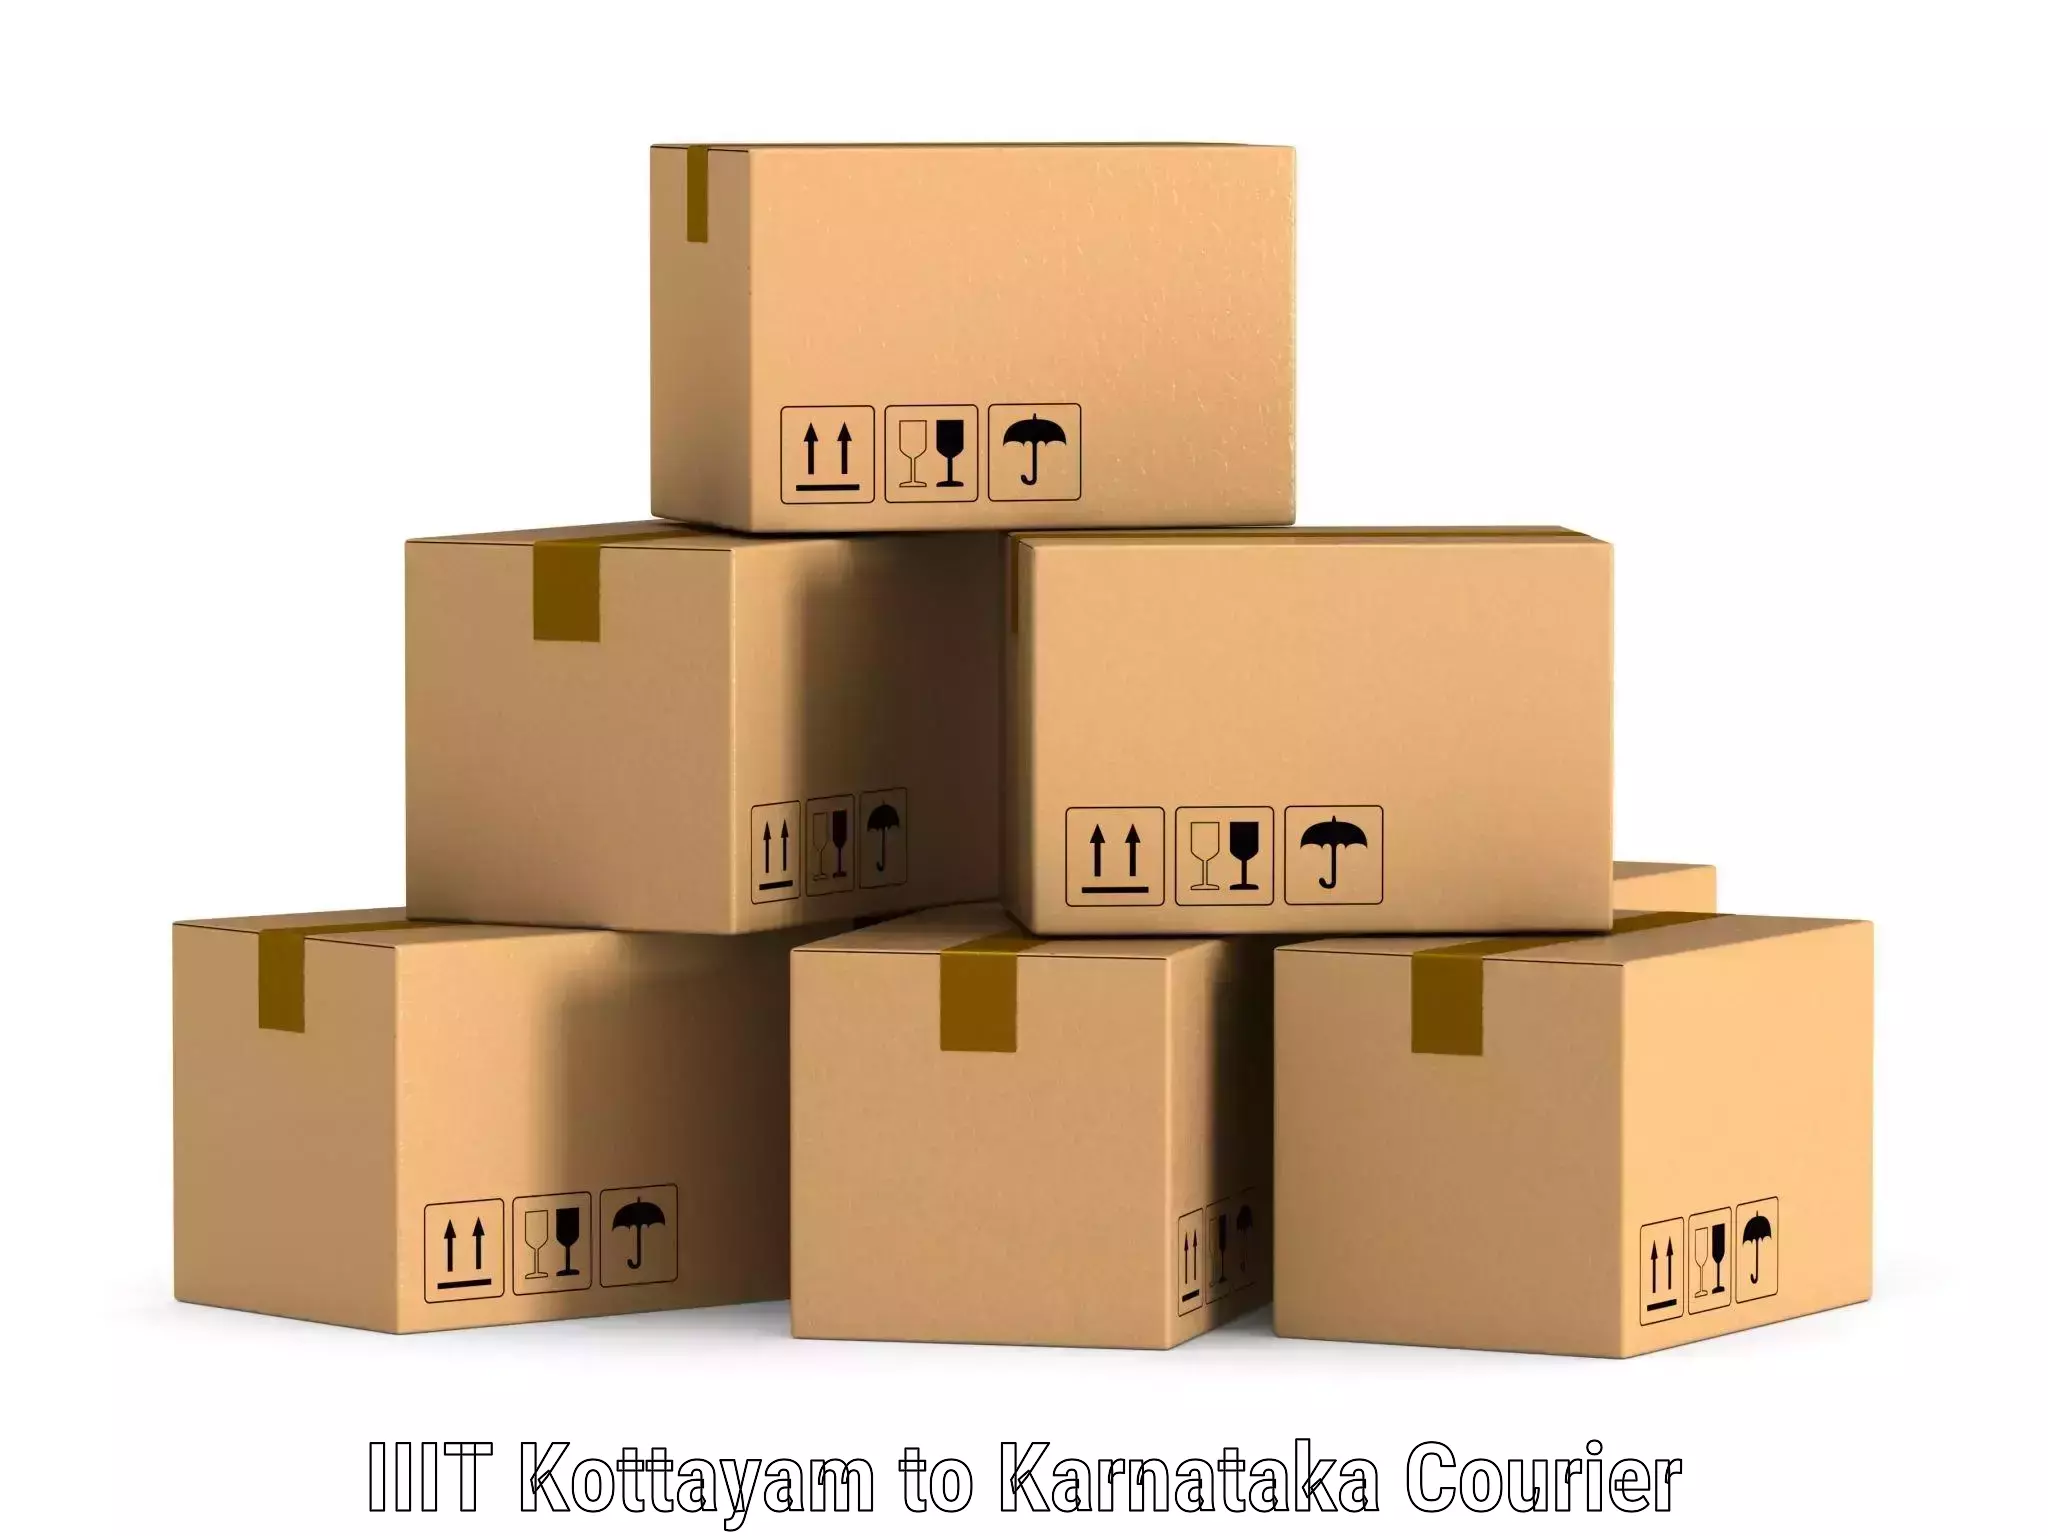 Business logistics support IIIT Kottayam to Hosanagar